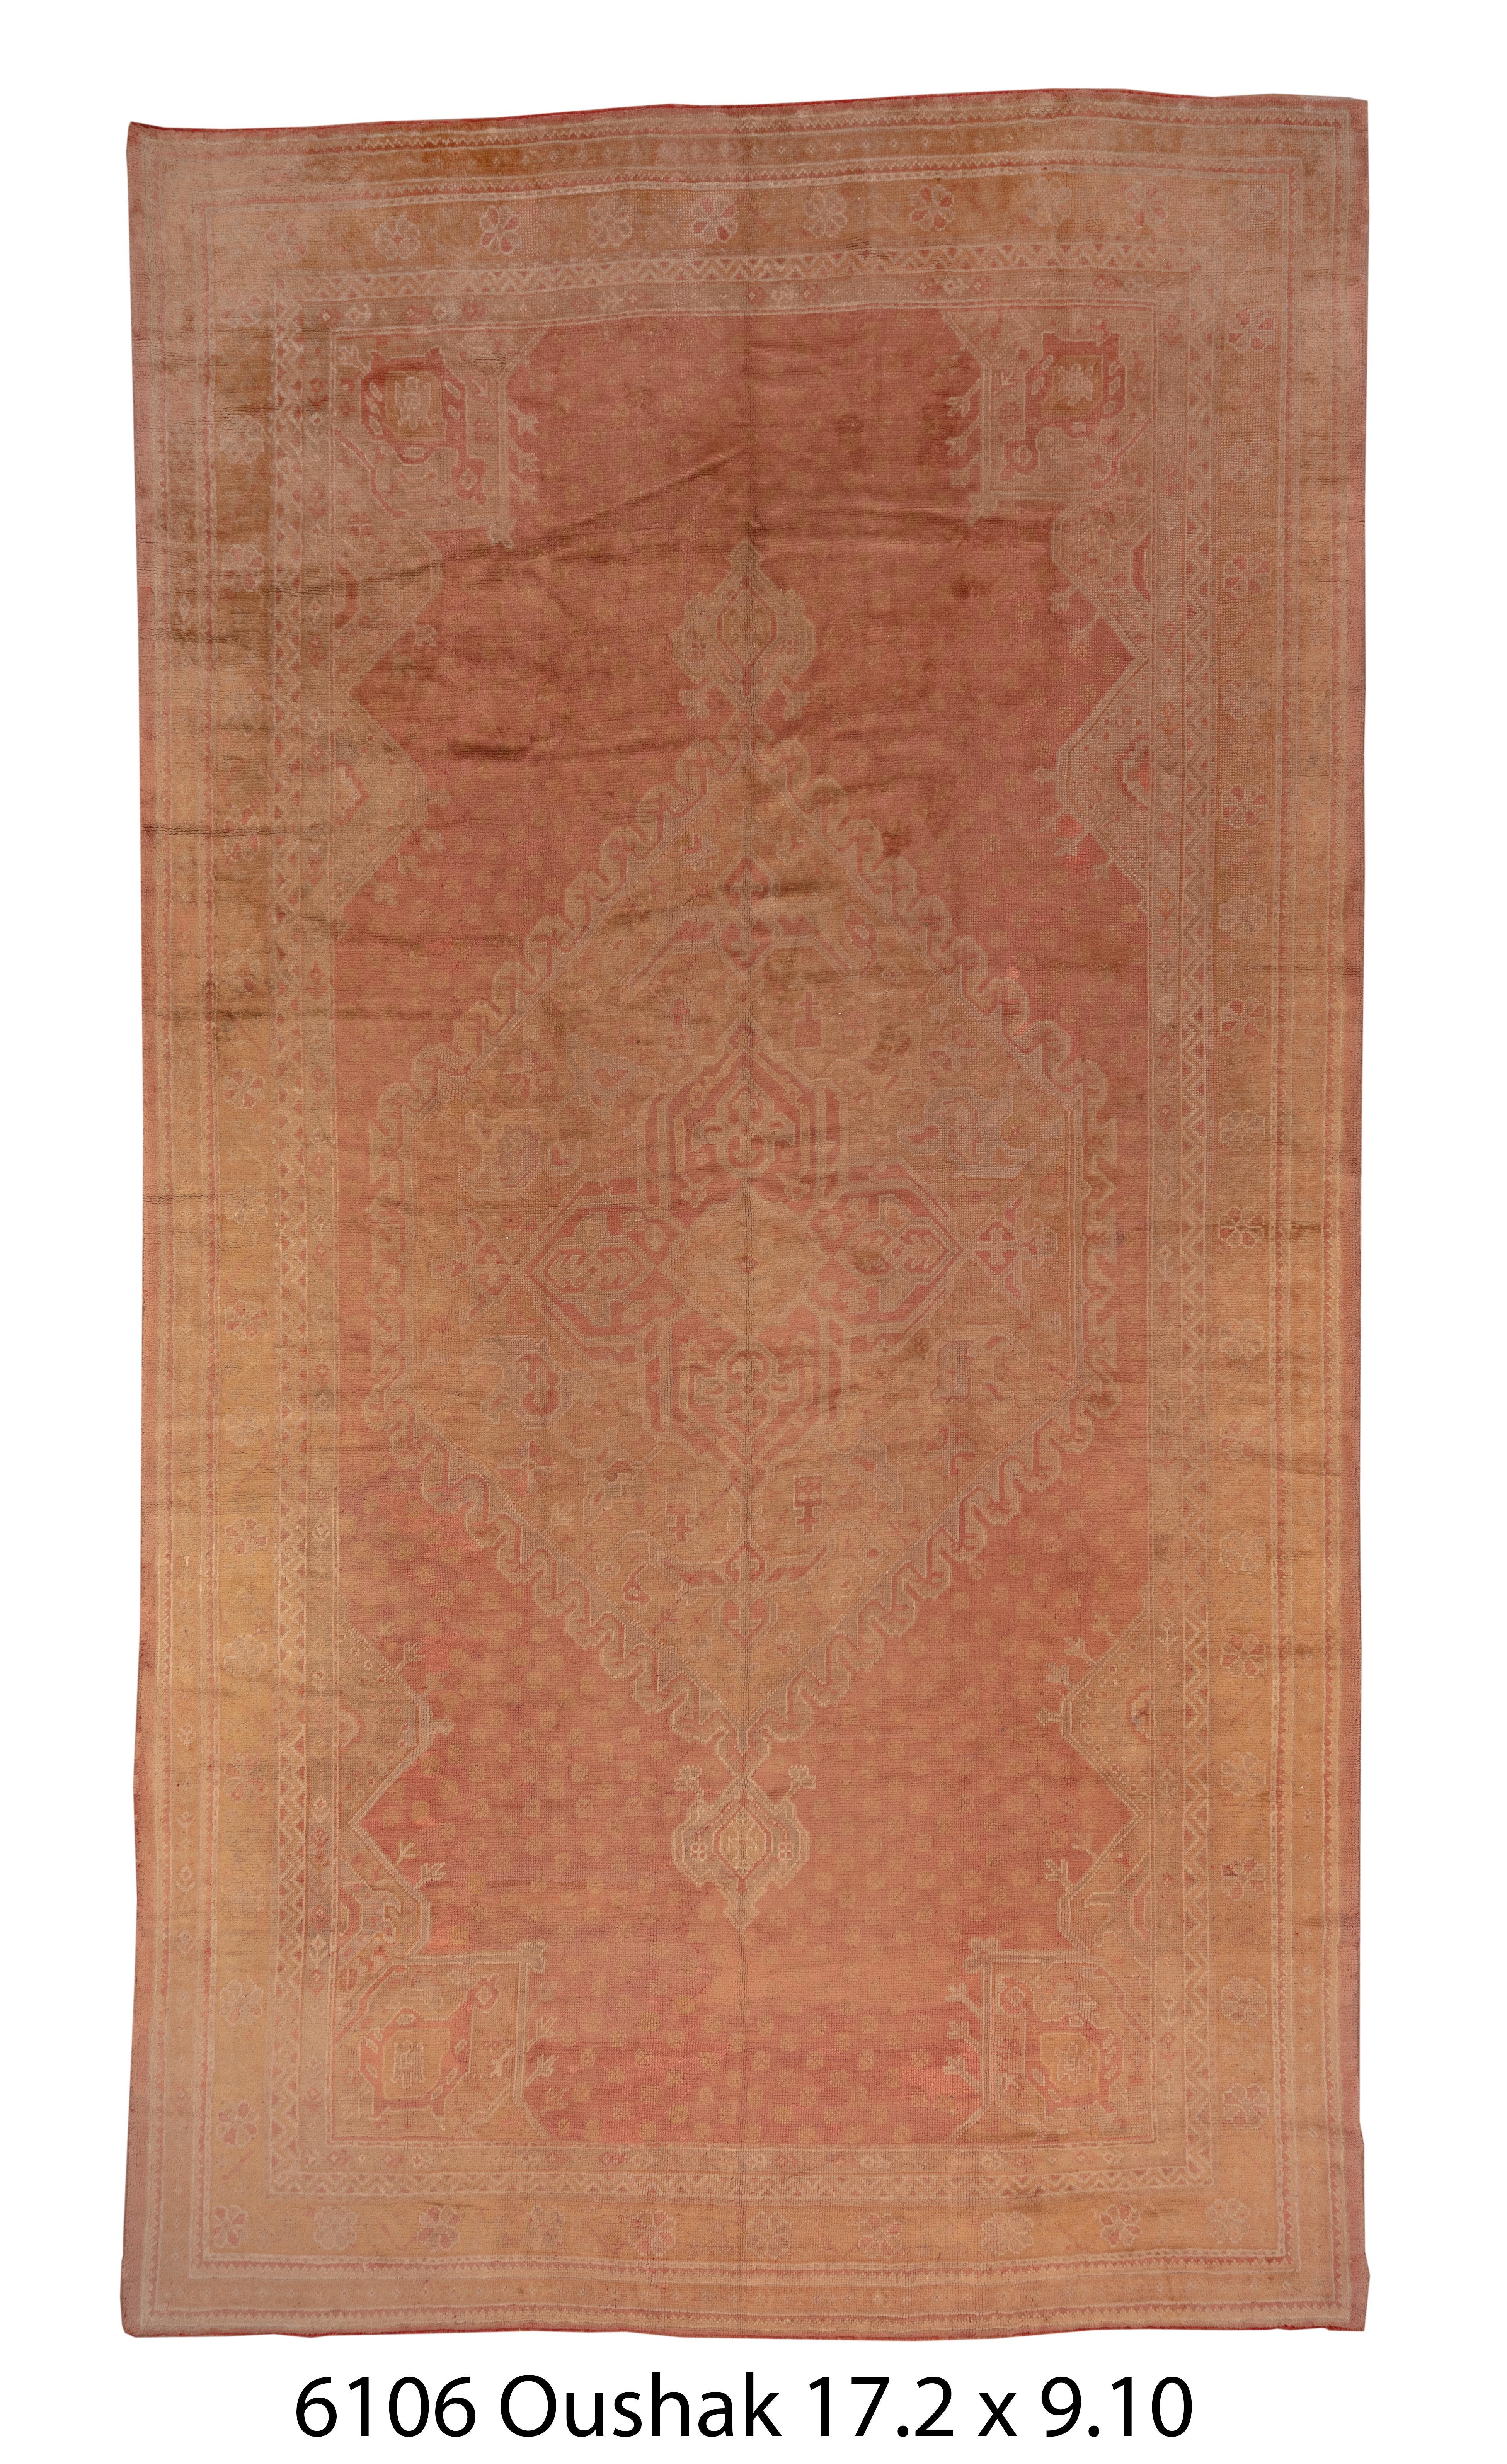 Ce tapis d'Anatolie occidentale à dominante pêche suit les archétypes ottomans classiques avec un médaillon hexagonal bordé de flammes et des coins arabesques épais. L'étroite bordure principale présente des rosettes disjointes.